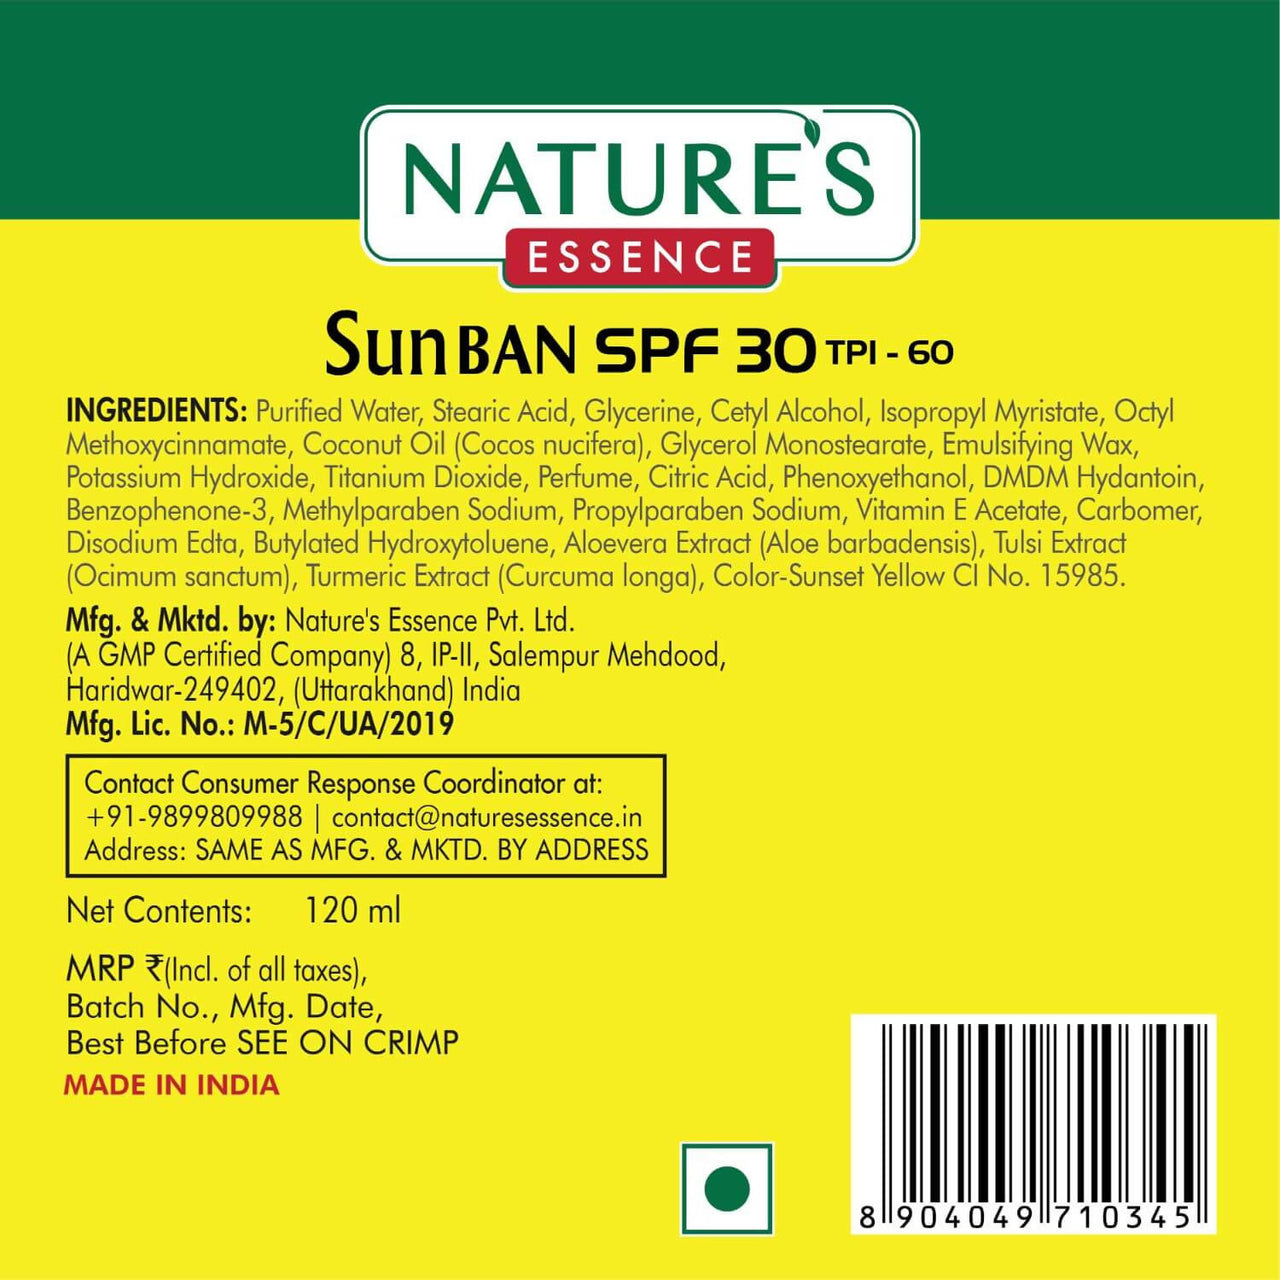 Nature’s Essence SunBan SPF 30 Sunscreen Lotion - Distacart